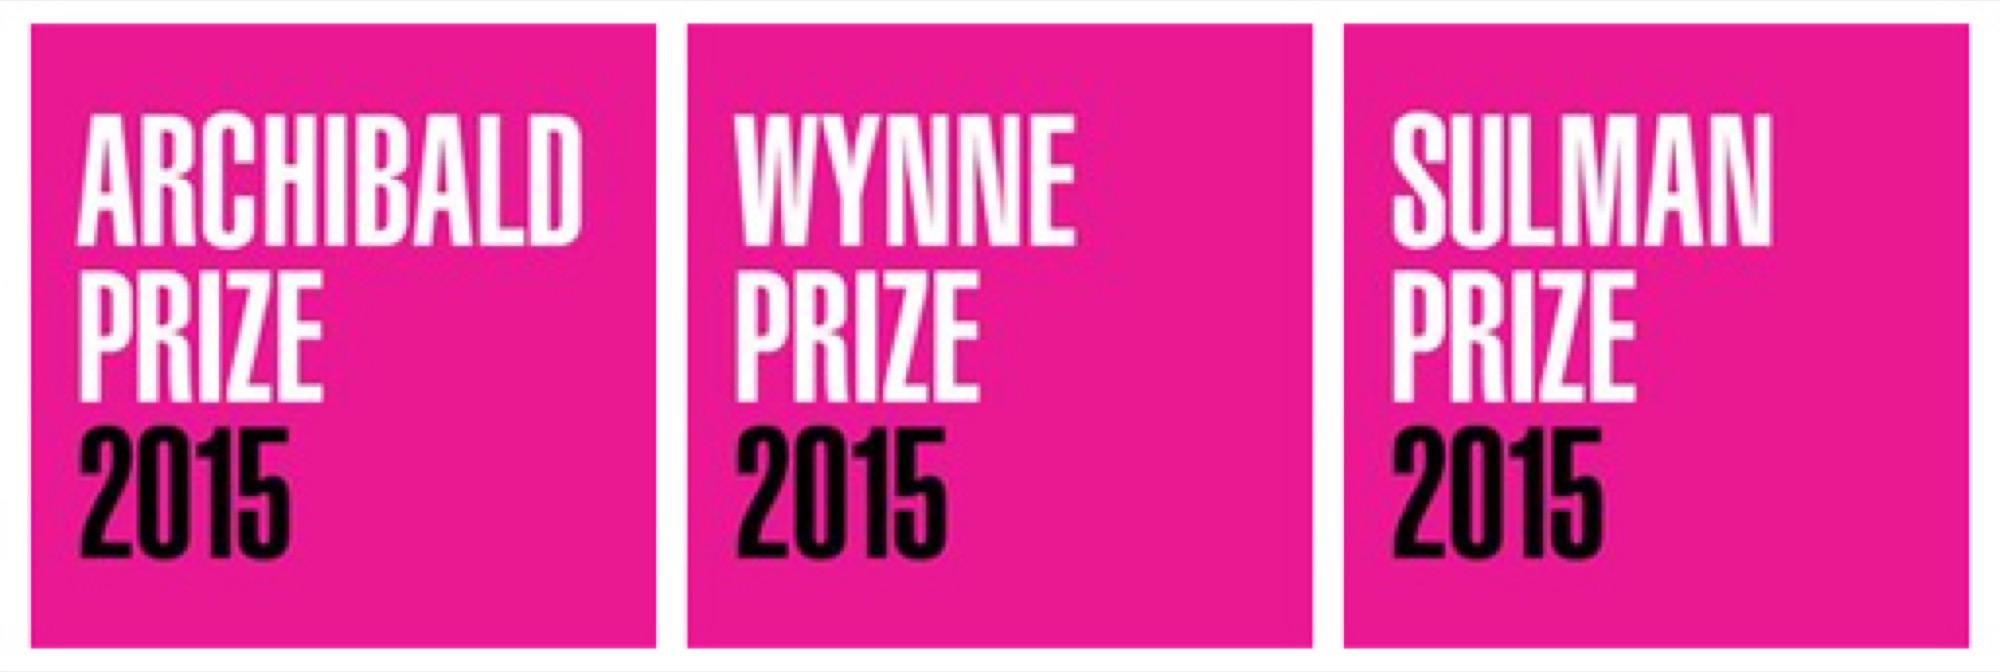 Archibald Prize and Wynne Prize Finalists 2015